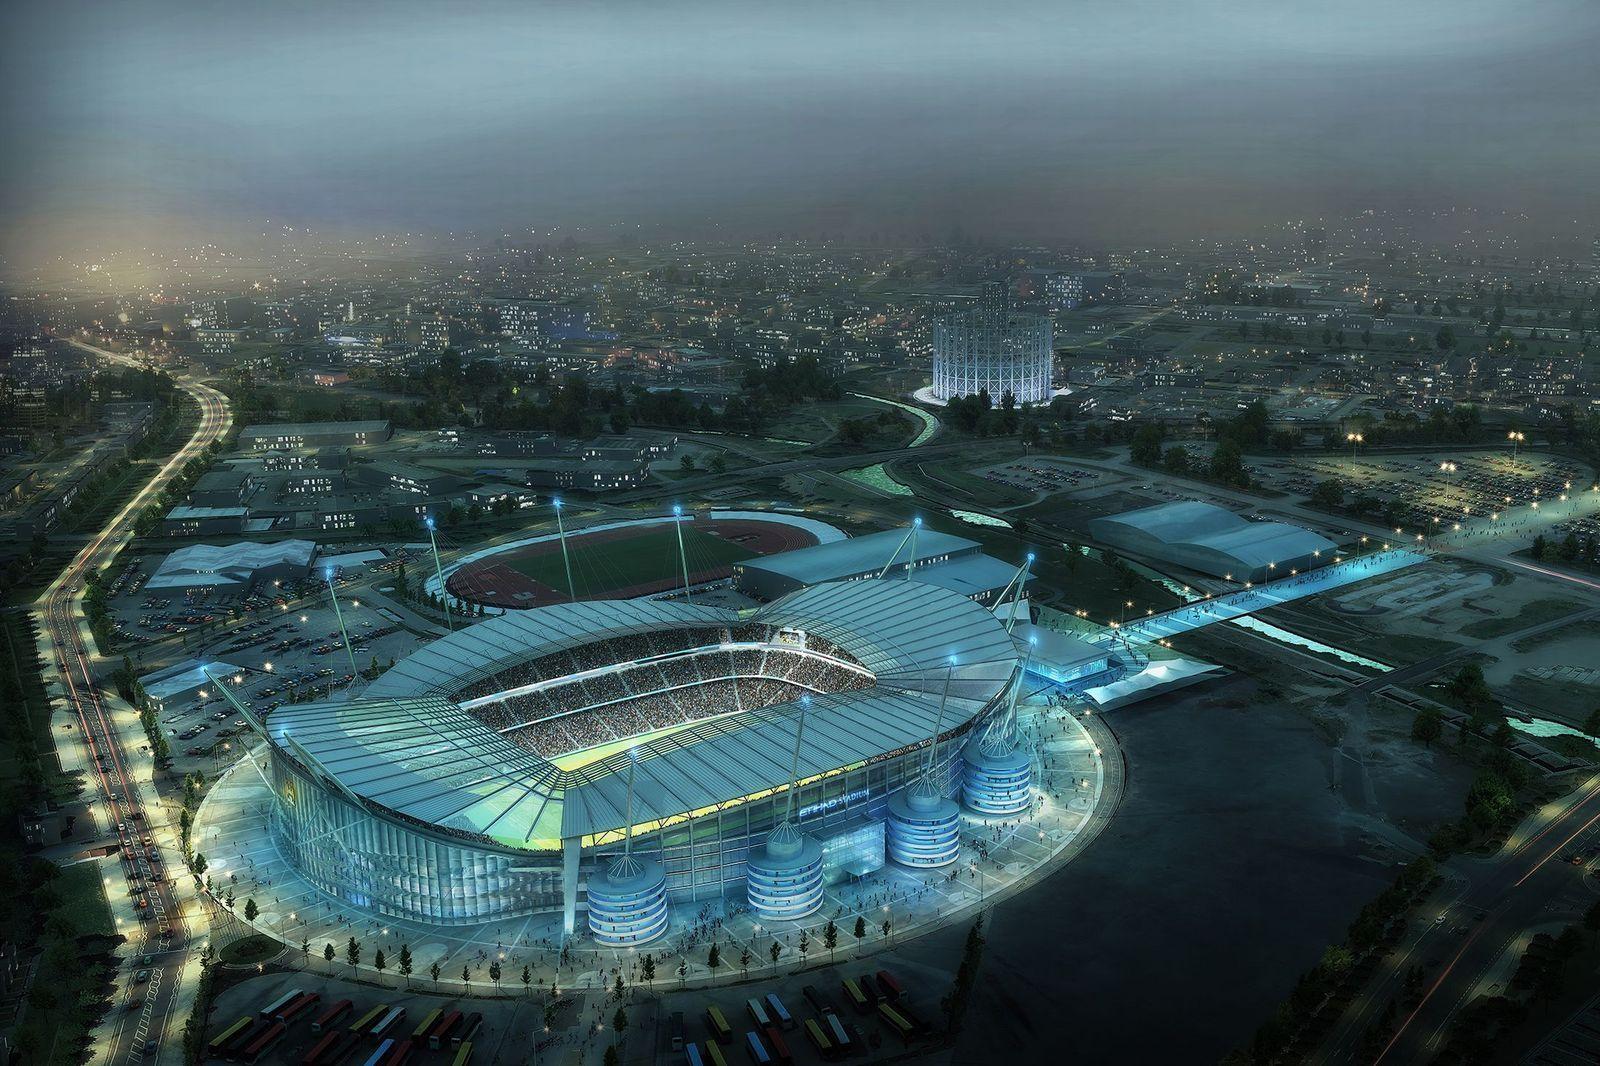 Design: Etihad Stadium